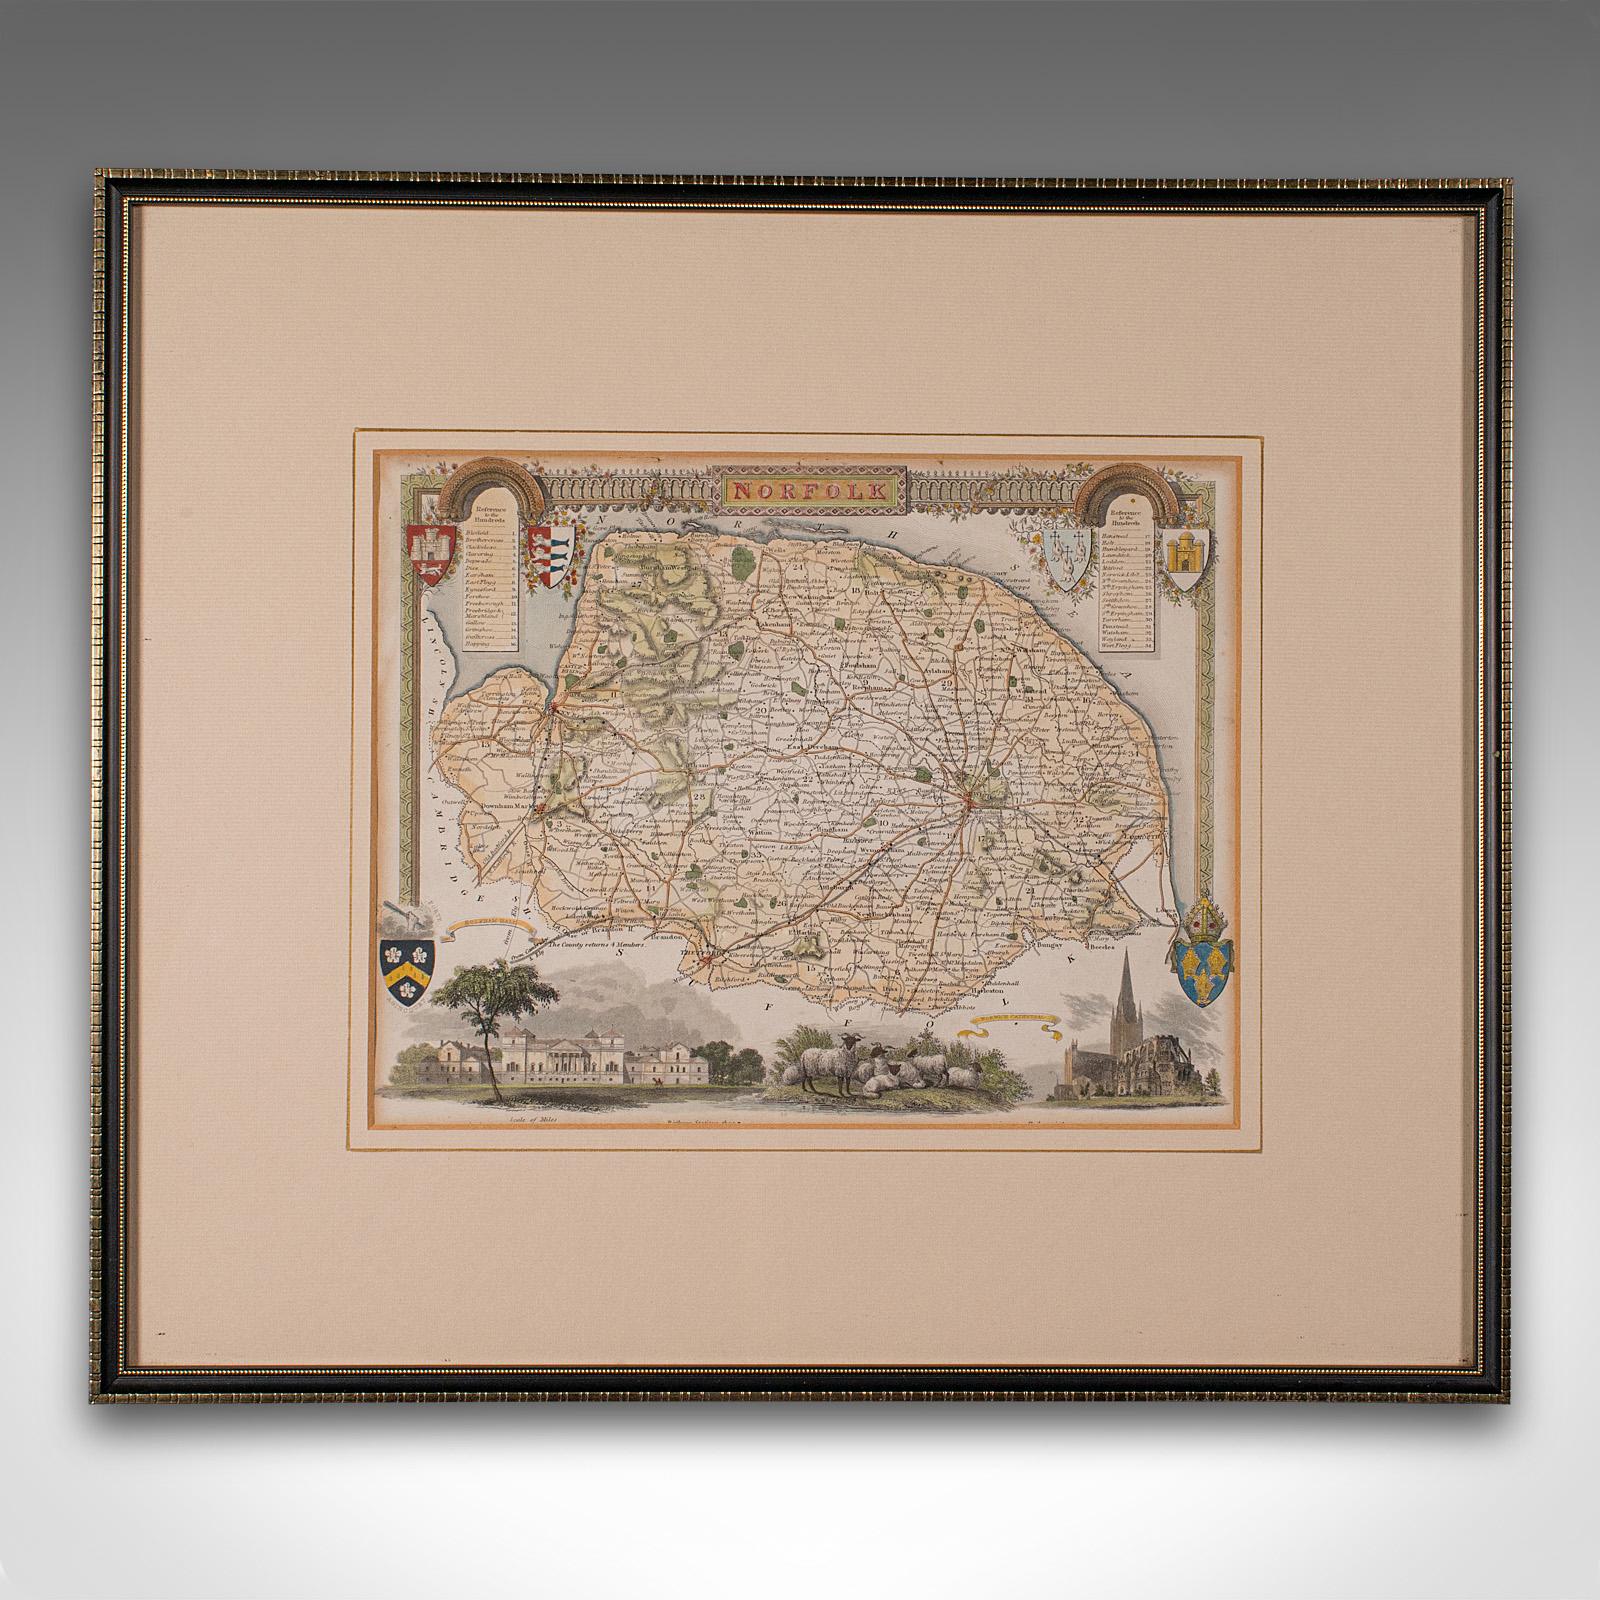 Il s'agit d'une ancienne carte lithographique du Norfolk. Gravure d'atlas anglaise encadrée, d'intérêt cartographique, datant du milieu du XIXe siècle ou plus tard.

Superbe lithographie du Norfolk et des détails de son comté, parfaite pour